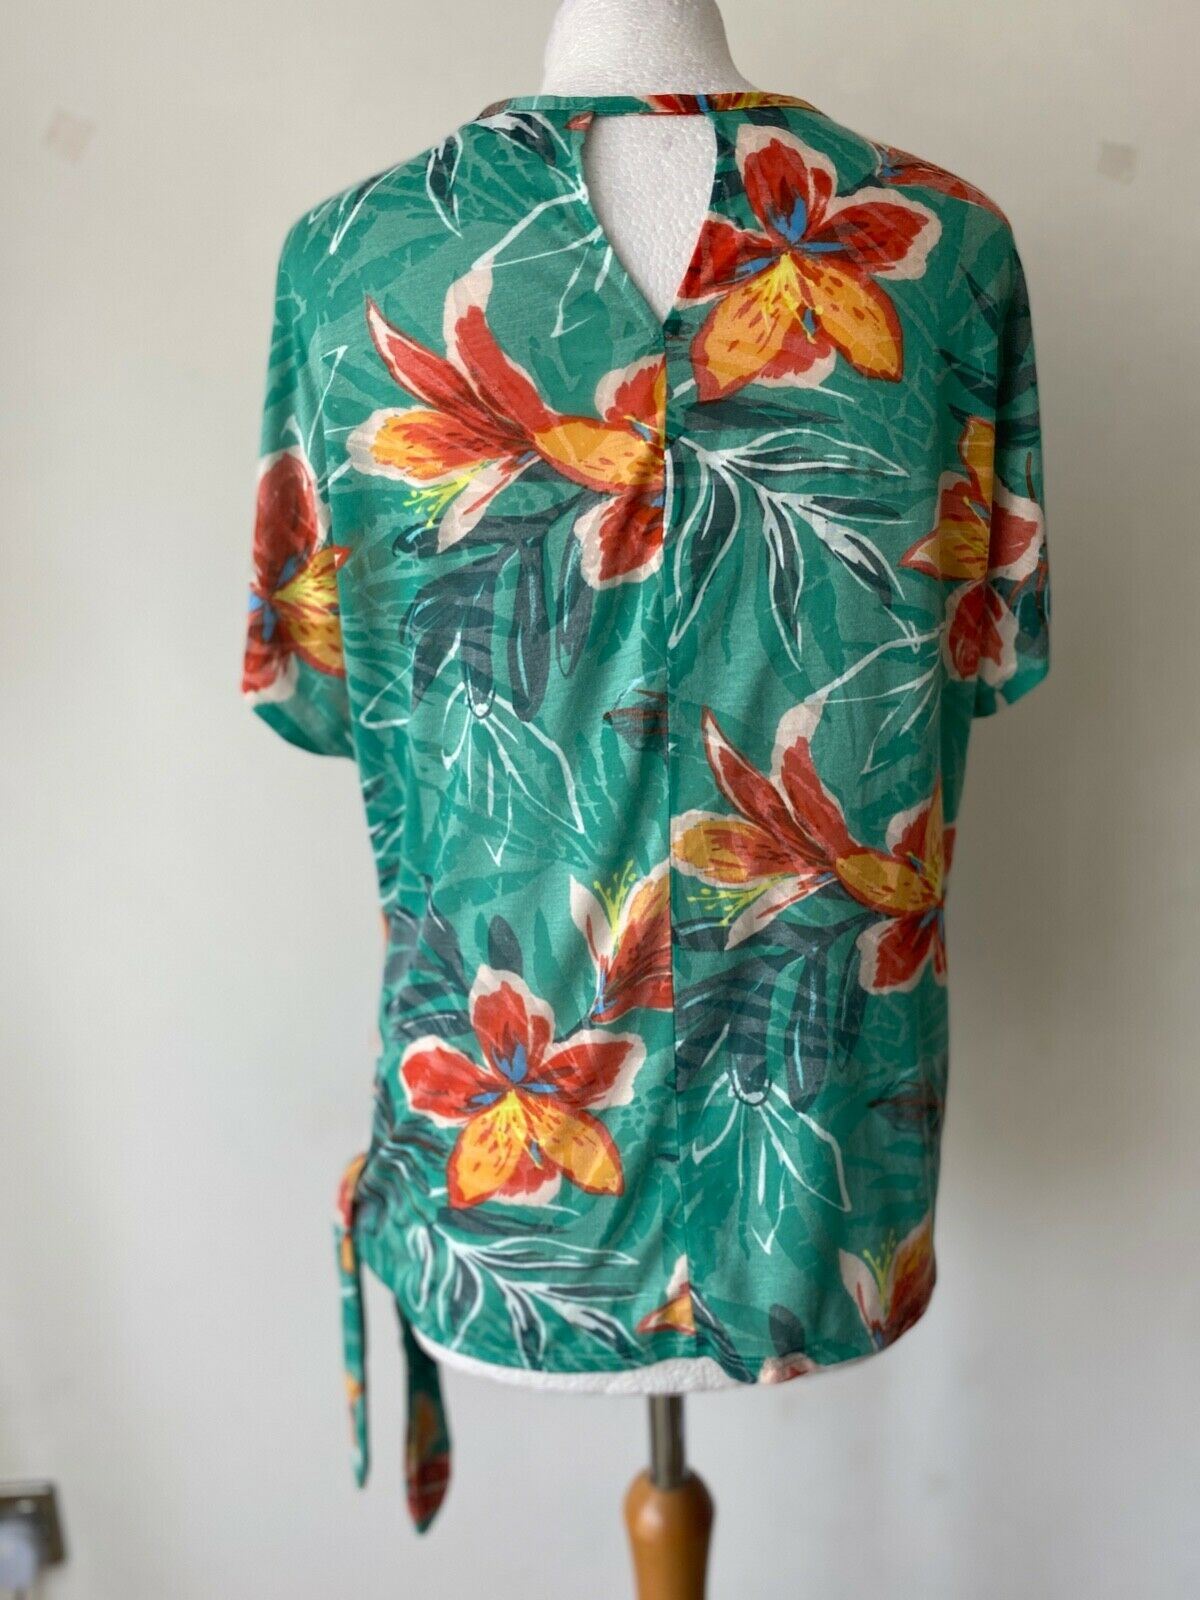 Bonmarche Tropical Print T-Shirt Side Tie Size 10